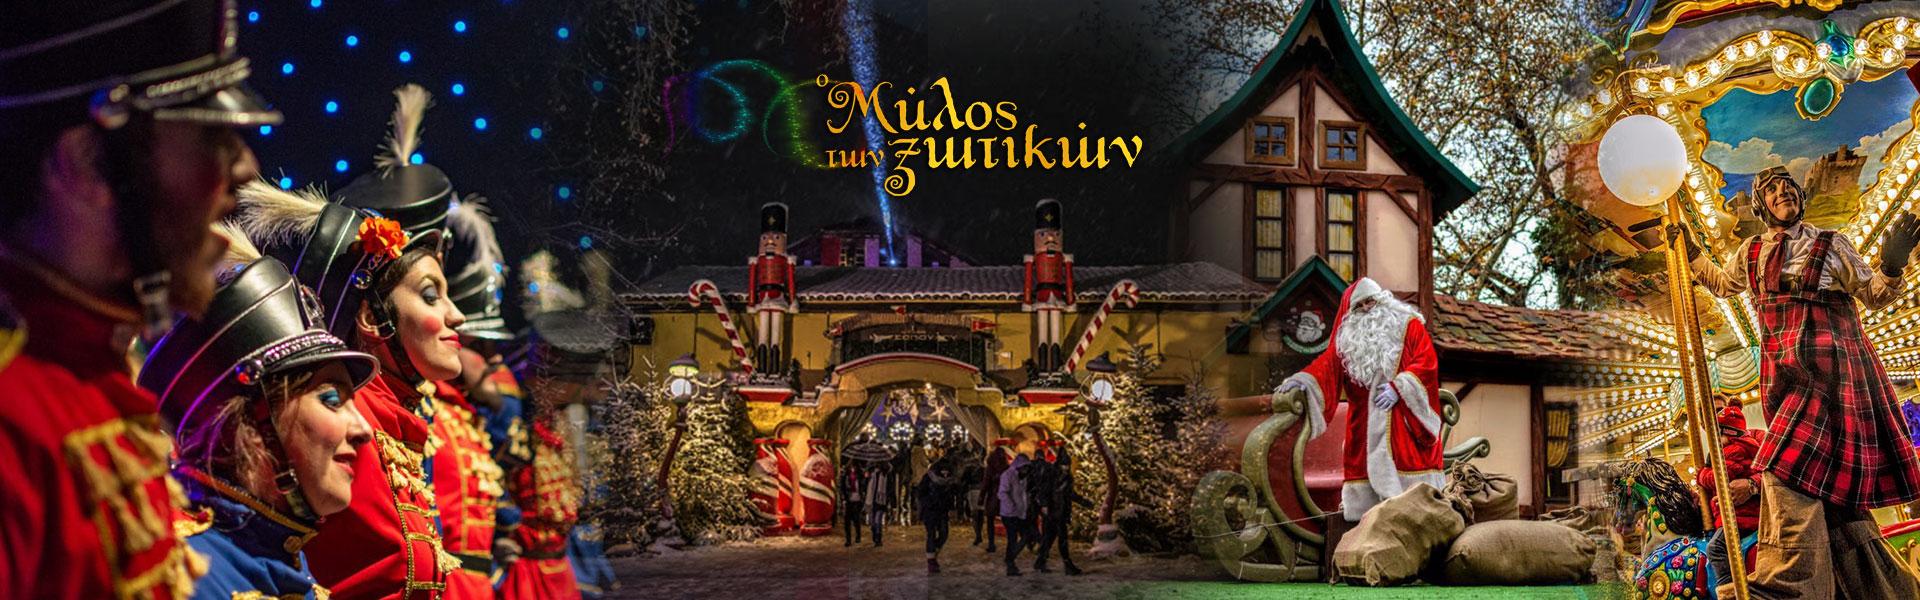 Mill Of The Elves, Christmas Theme Park, Trikala